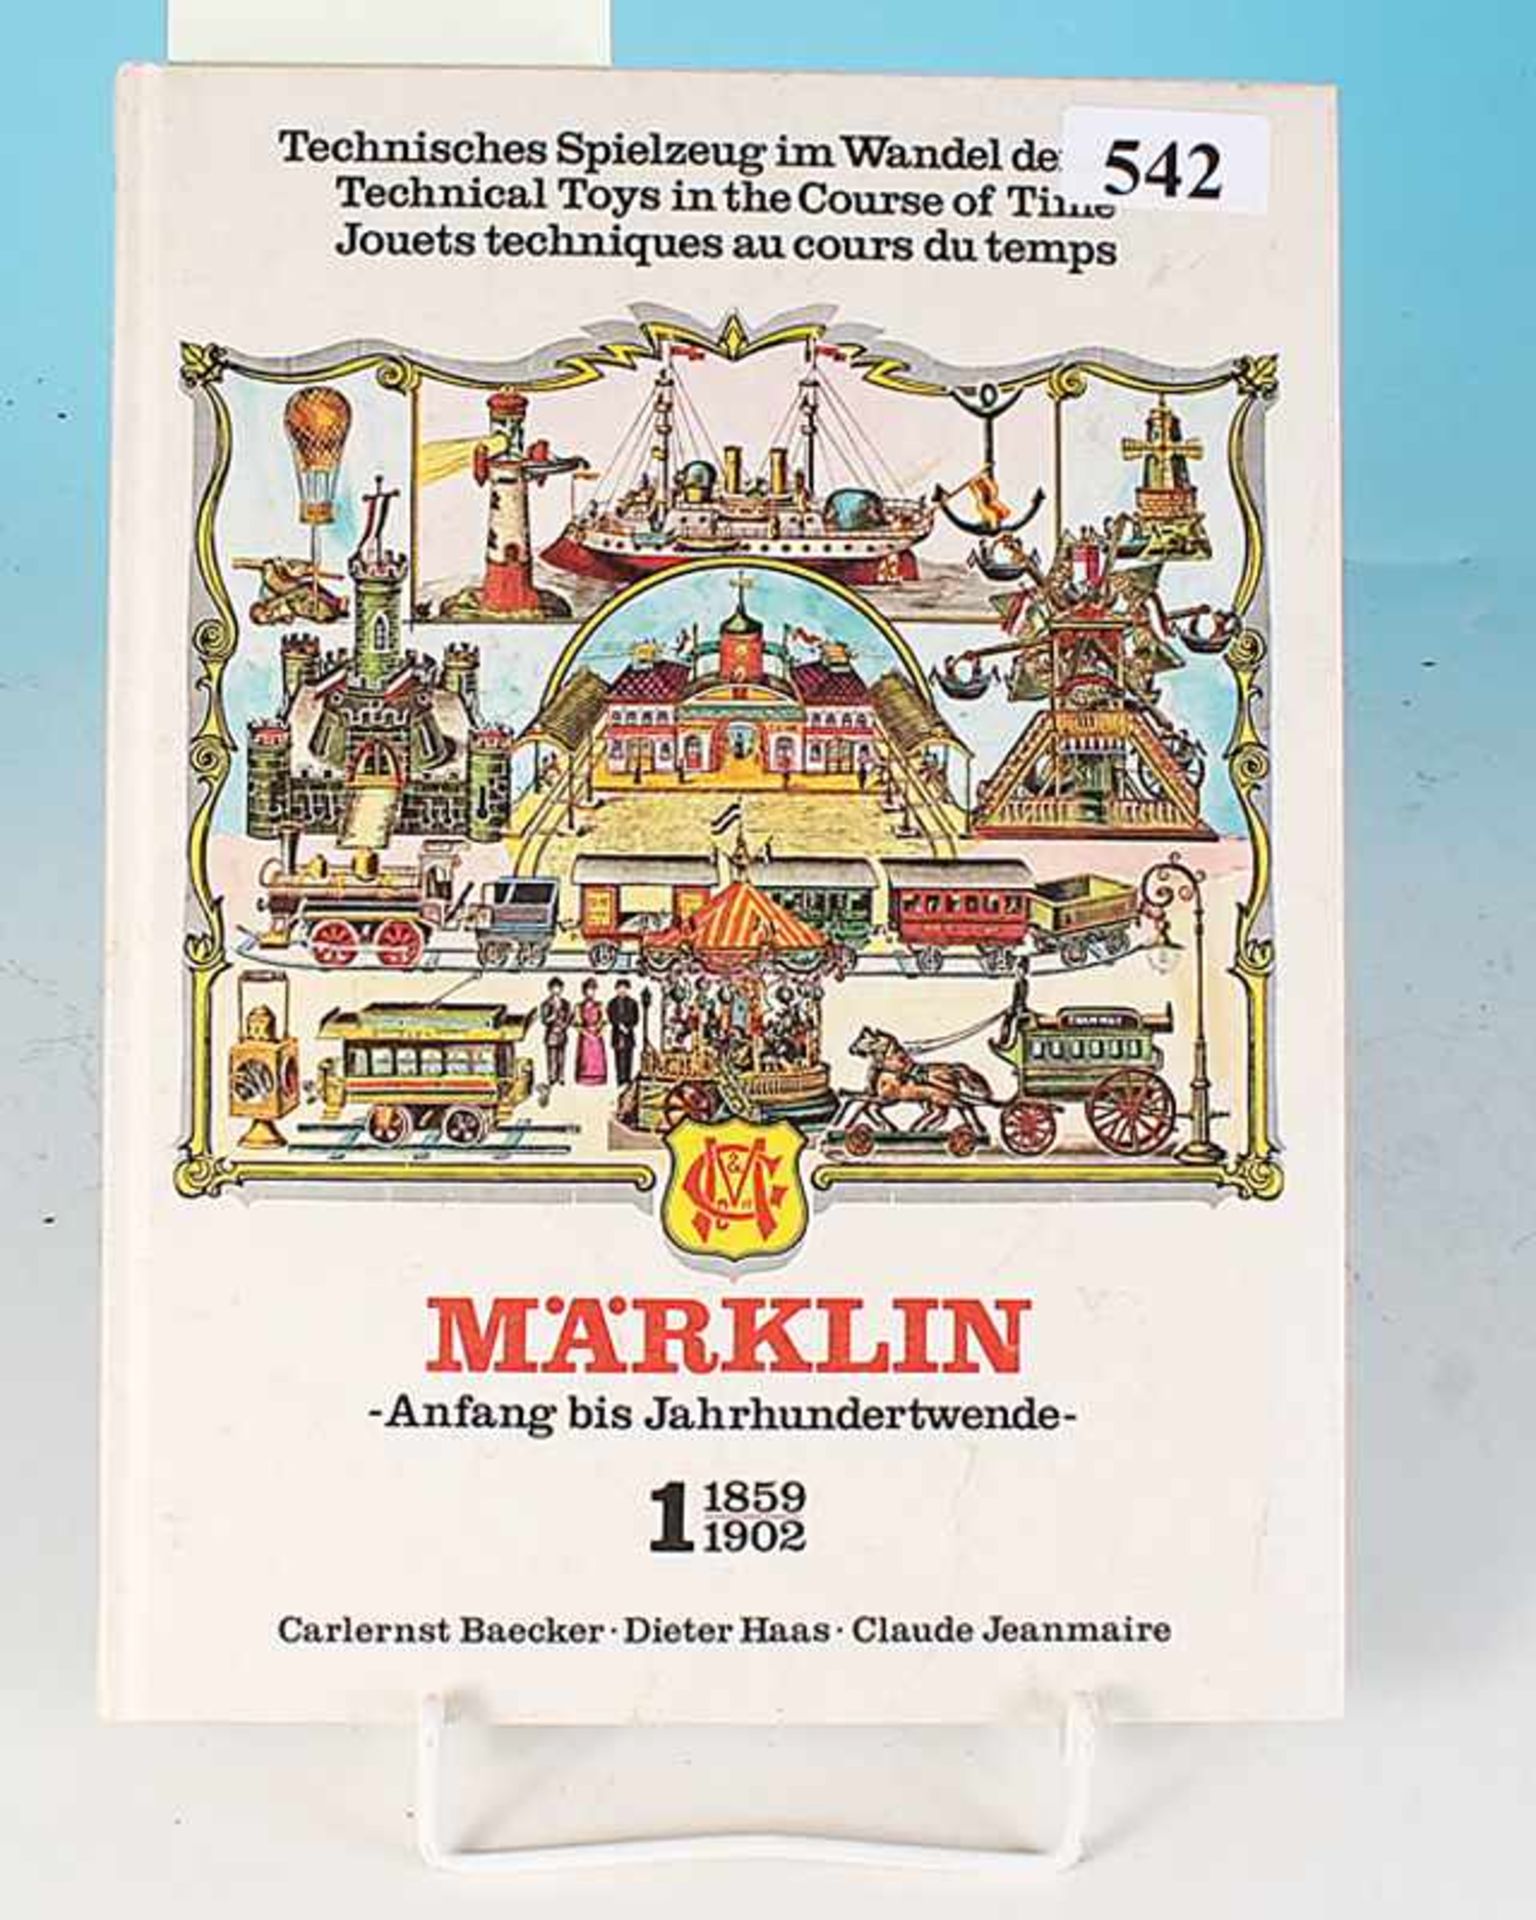 MARKLIN "Anfang bis Jahrhundertwende", Band 1